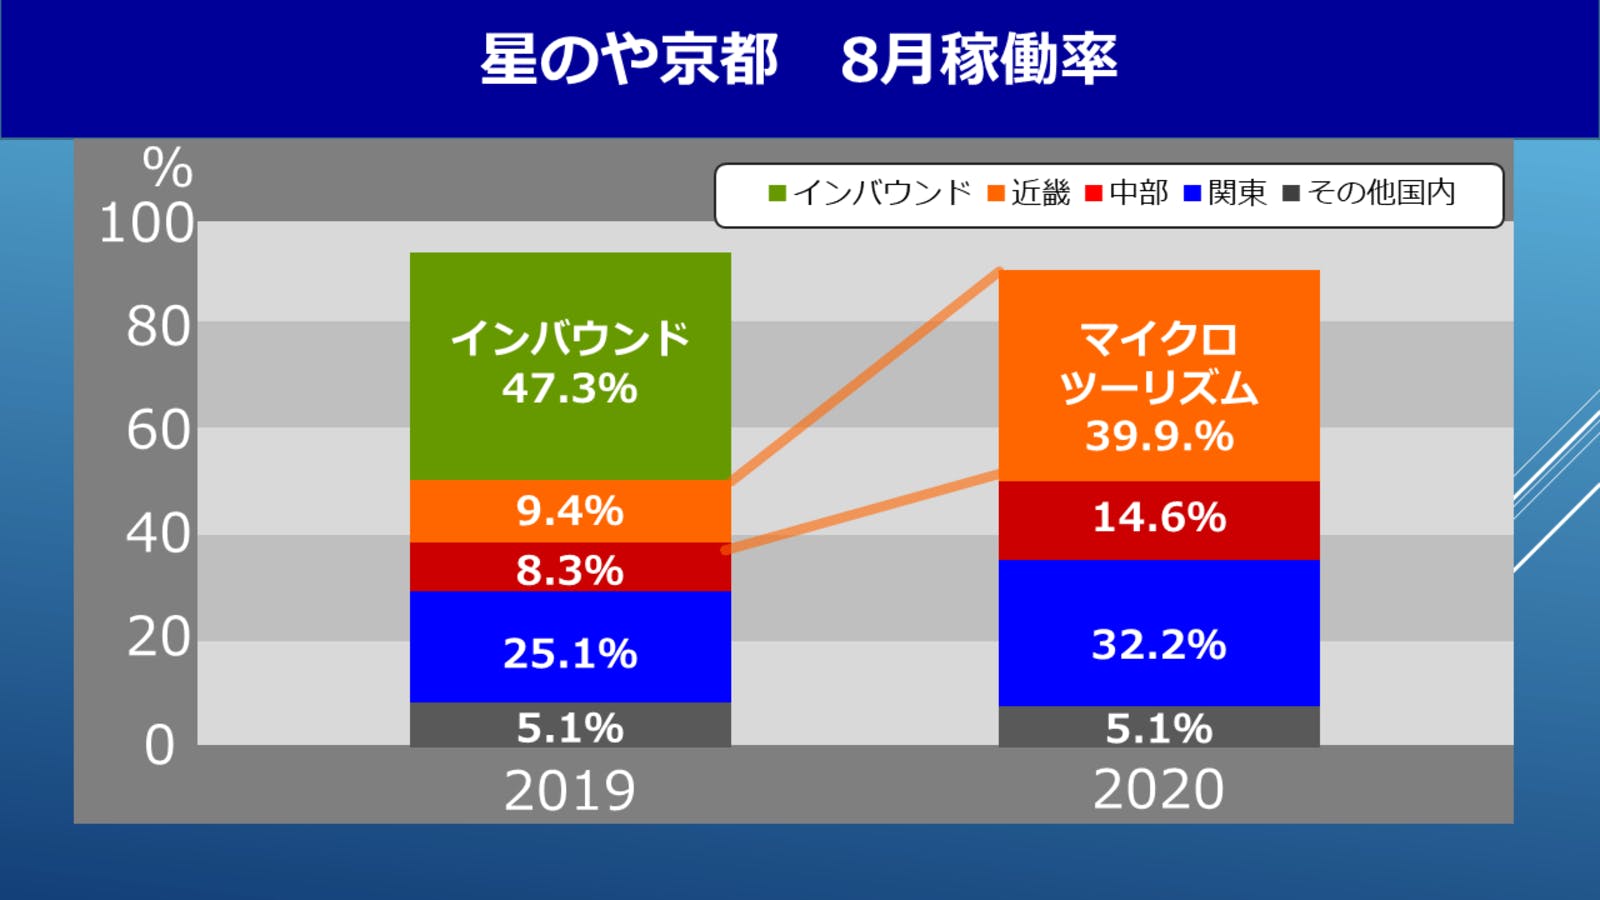 「星のや京都」の8月の客室稼働率の対比（2019年、2020年）